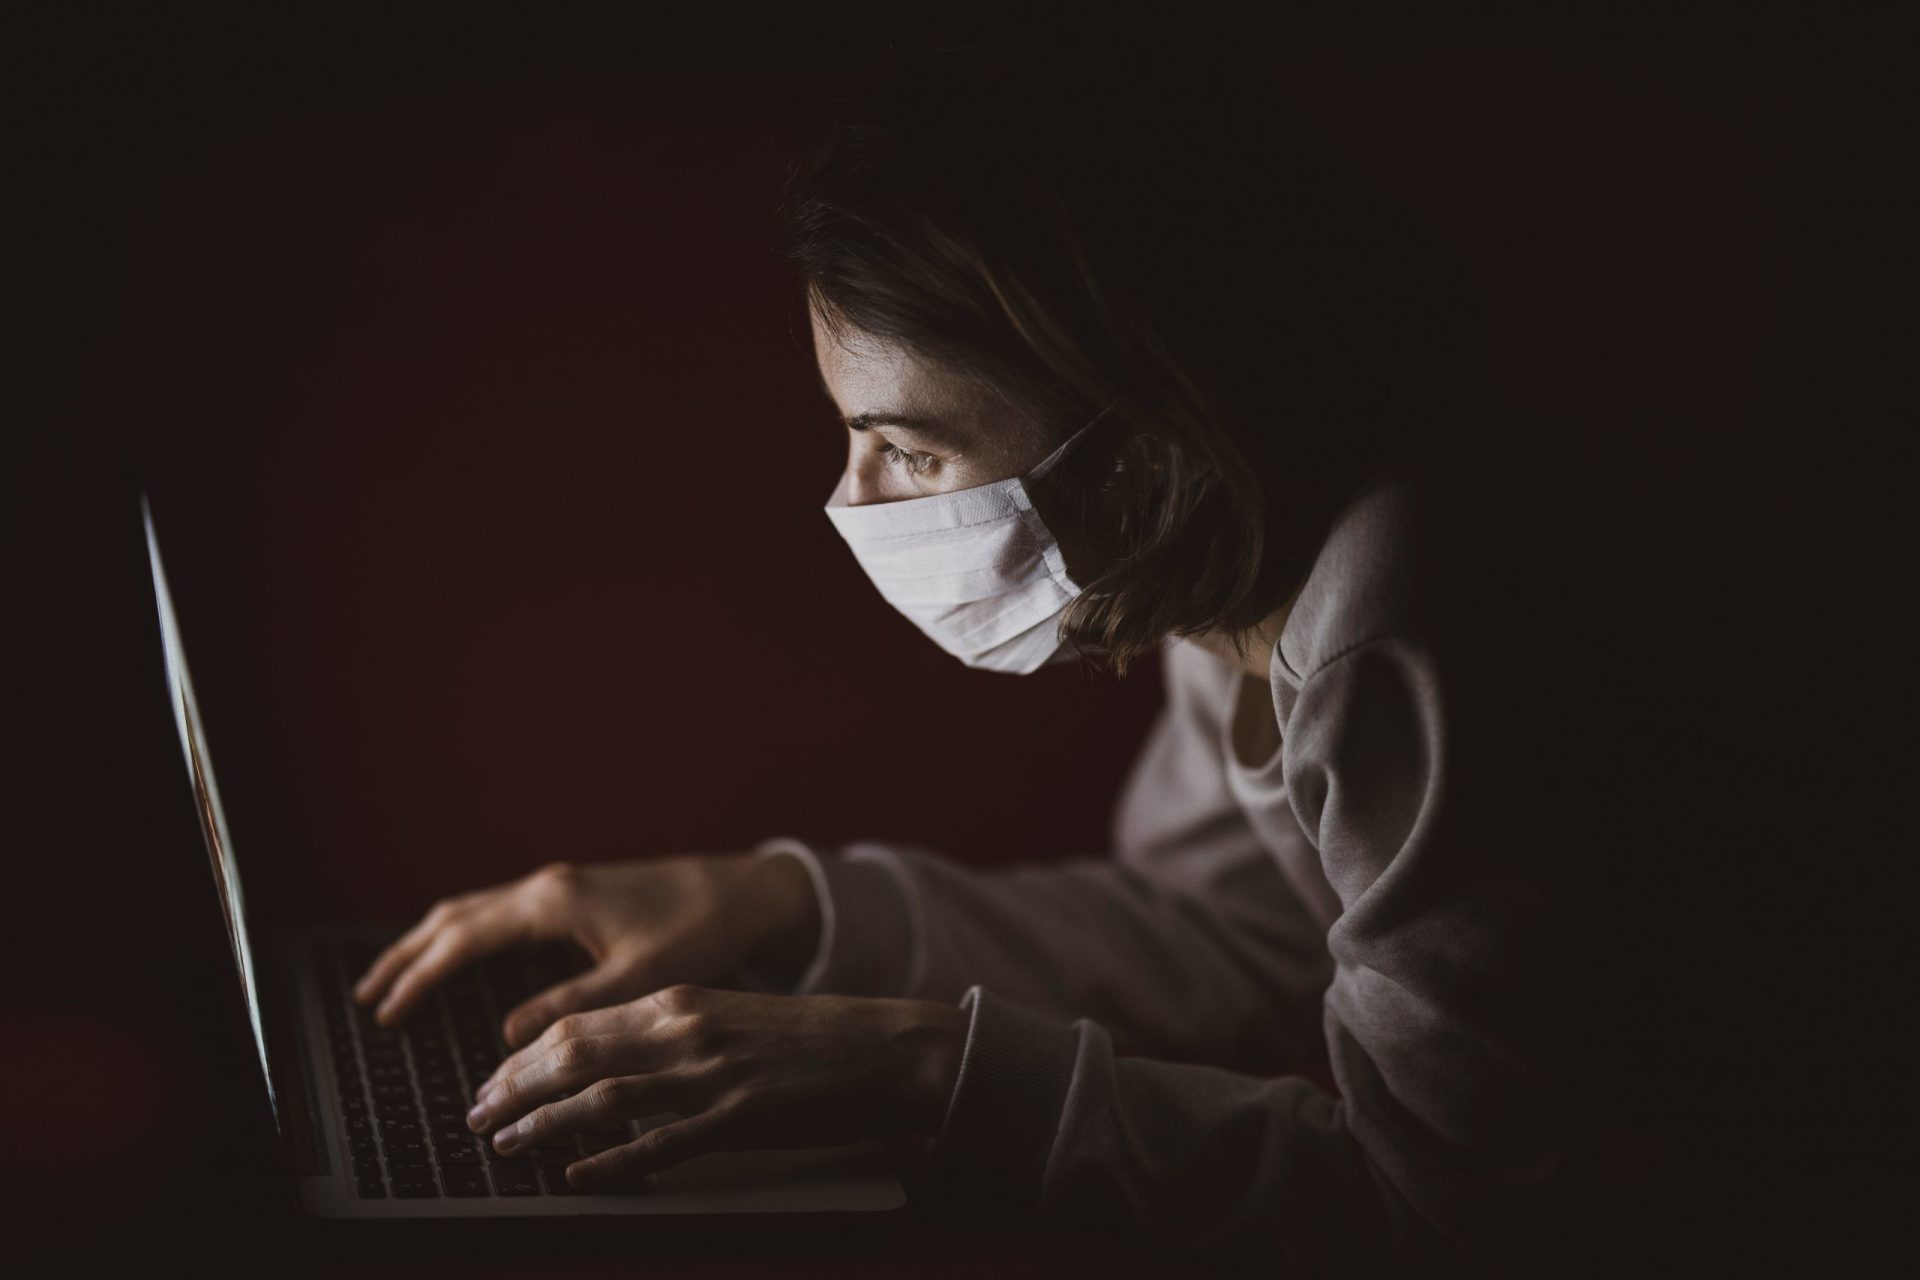 pessoa com máscara de proteção usa computador portátil na penumbra